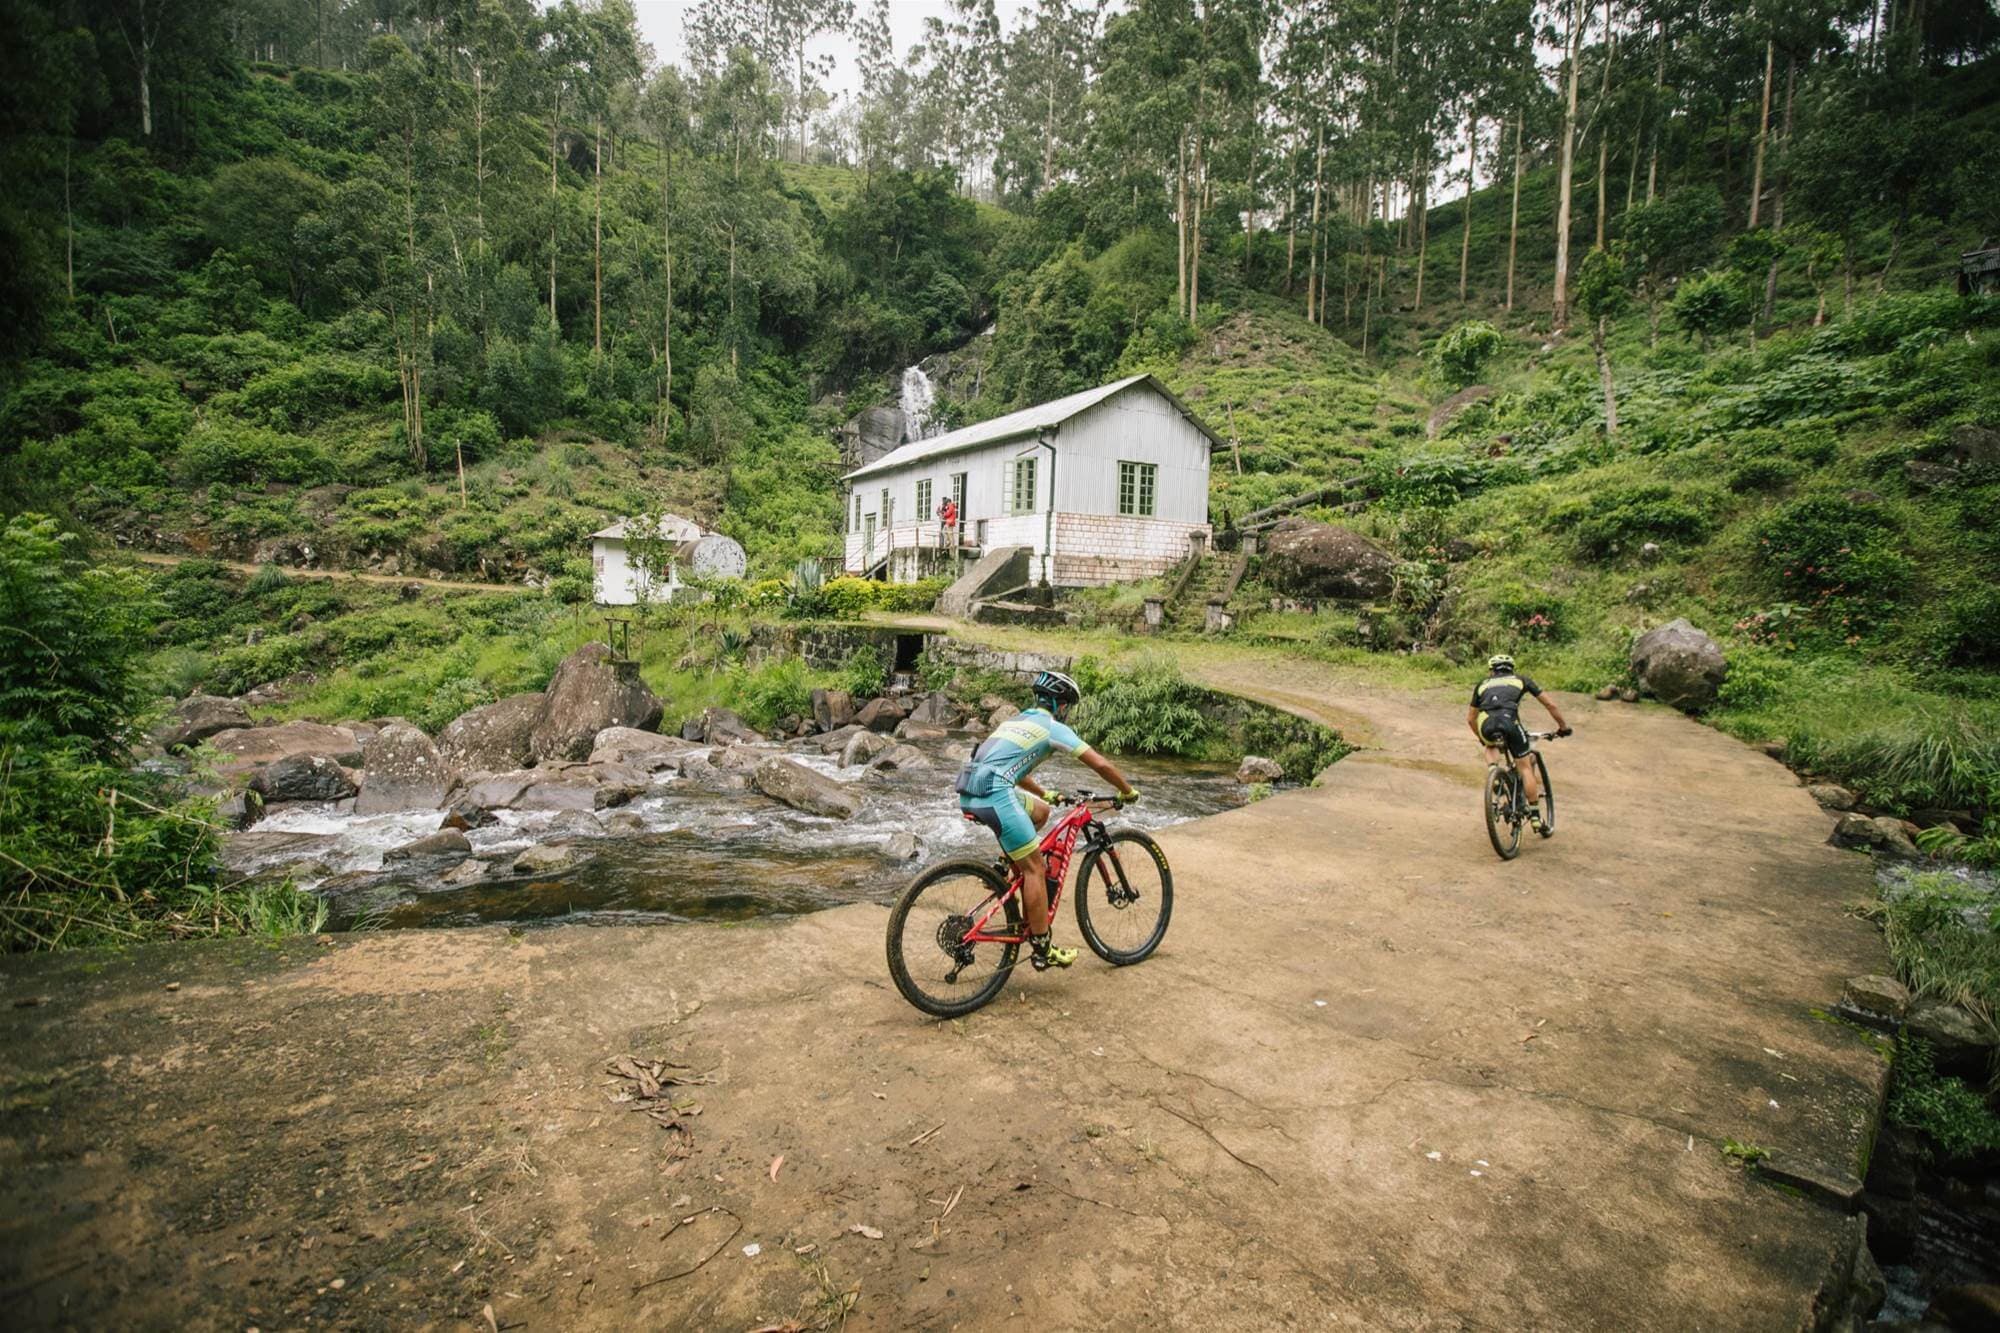 يتمتع راكبو الدراجات بتجربة المناظر الطبيعية الخلابة في جولة ركوب الدراجات في نوارا إليا سريلانكا